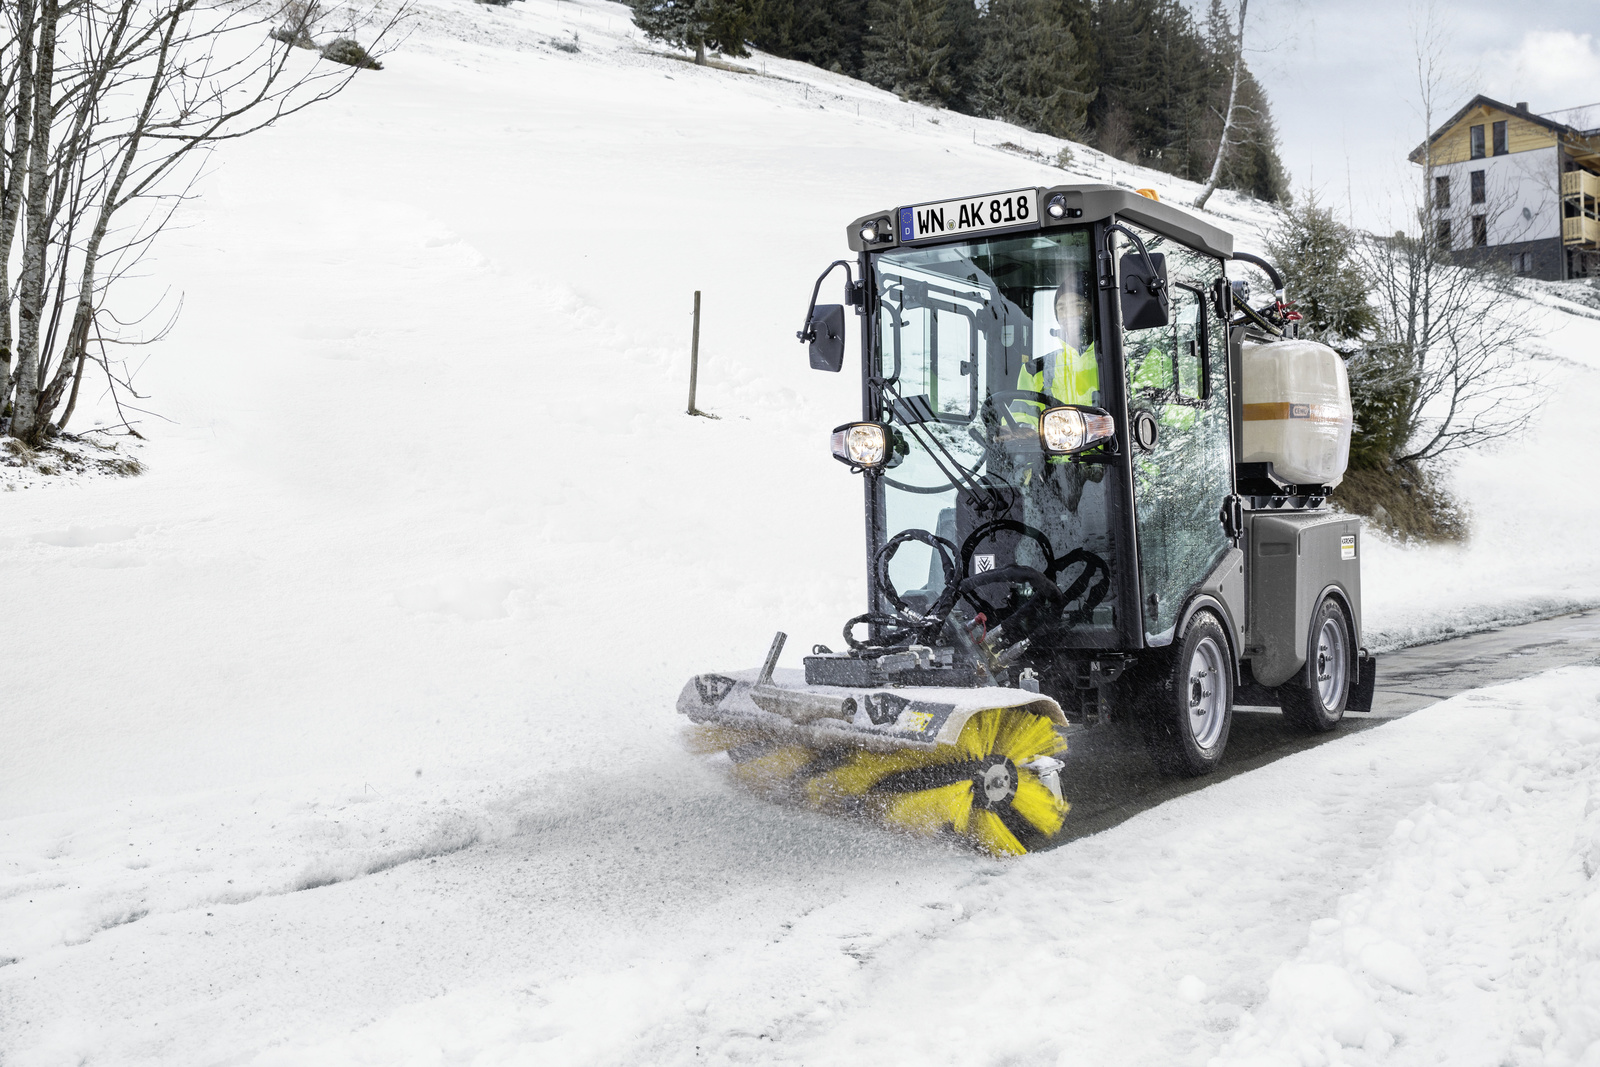 下雪就是通知，雪停就是命令，开着德国卡赫MIC市政多功能清扫车一起扫雪！